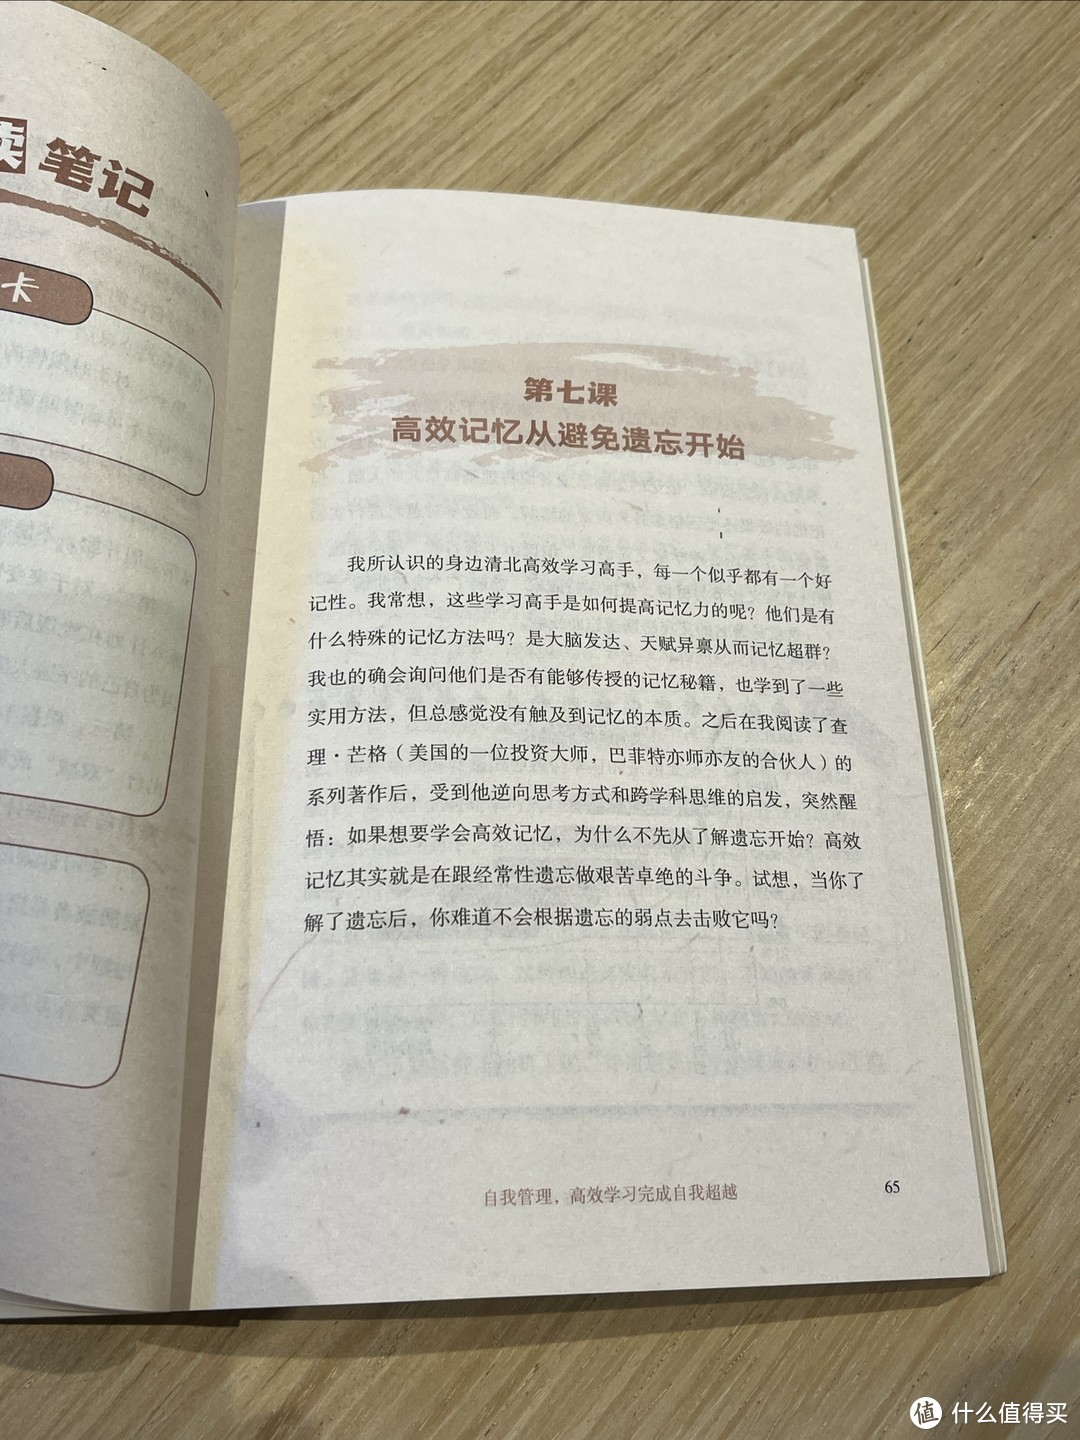 分享最近翻看的一本书：《清华北大学习高手》